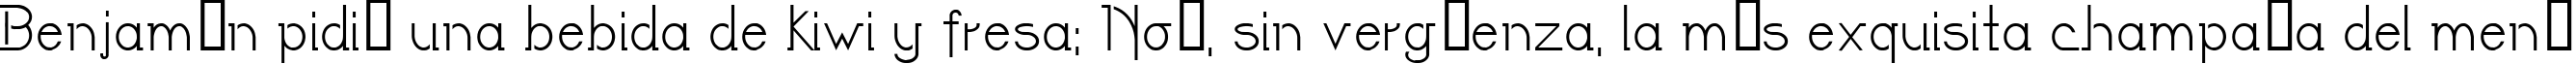 Пример написания шрифтом LateNite текста на испанском